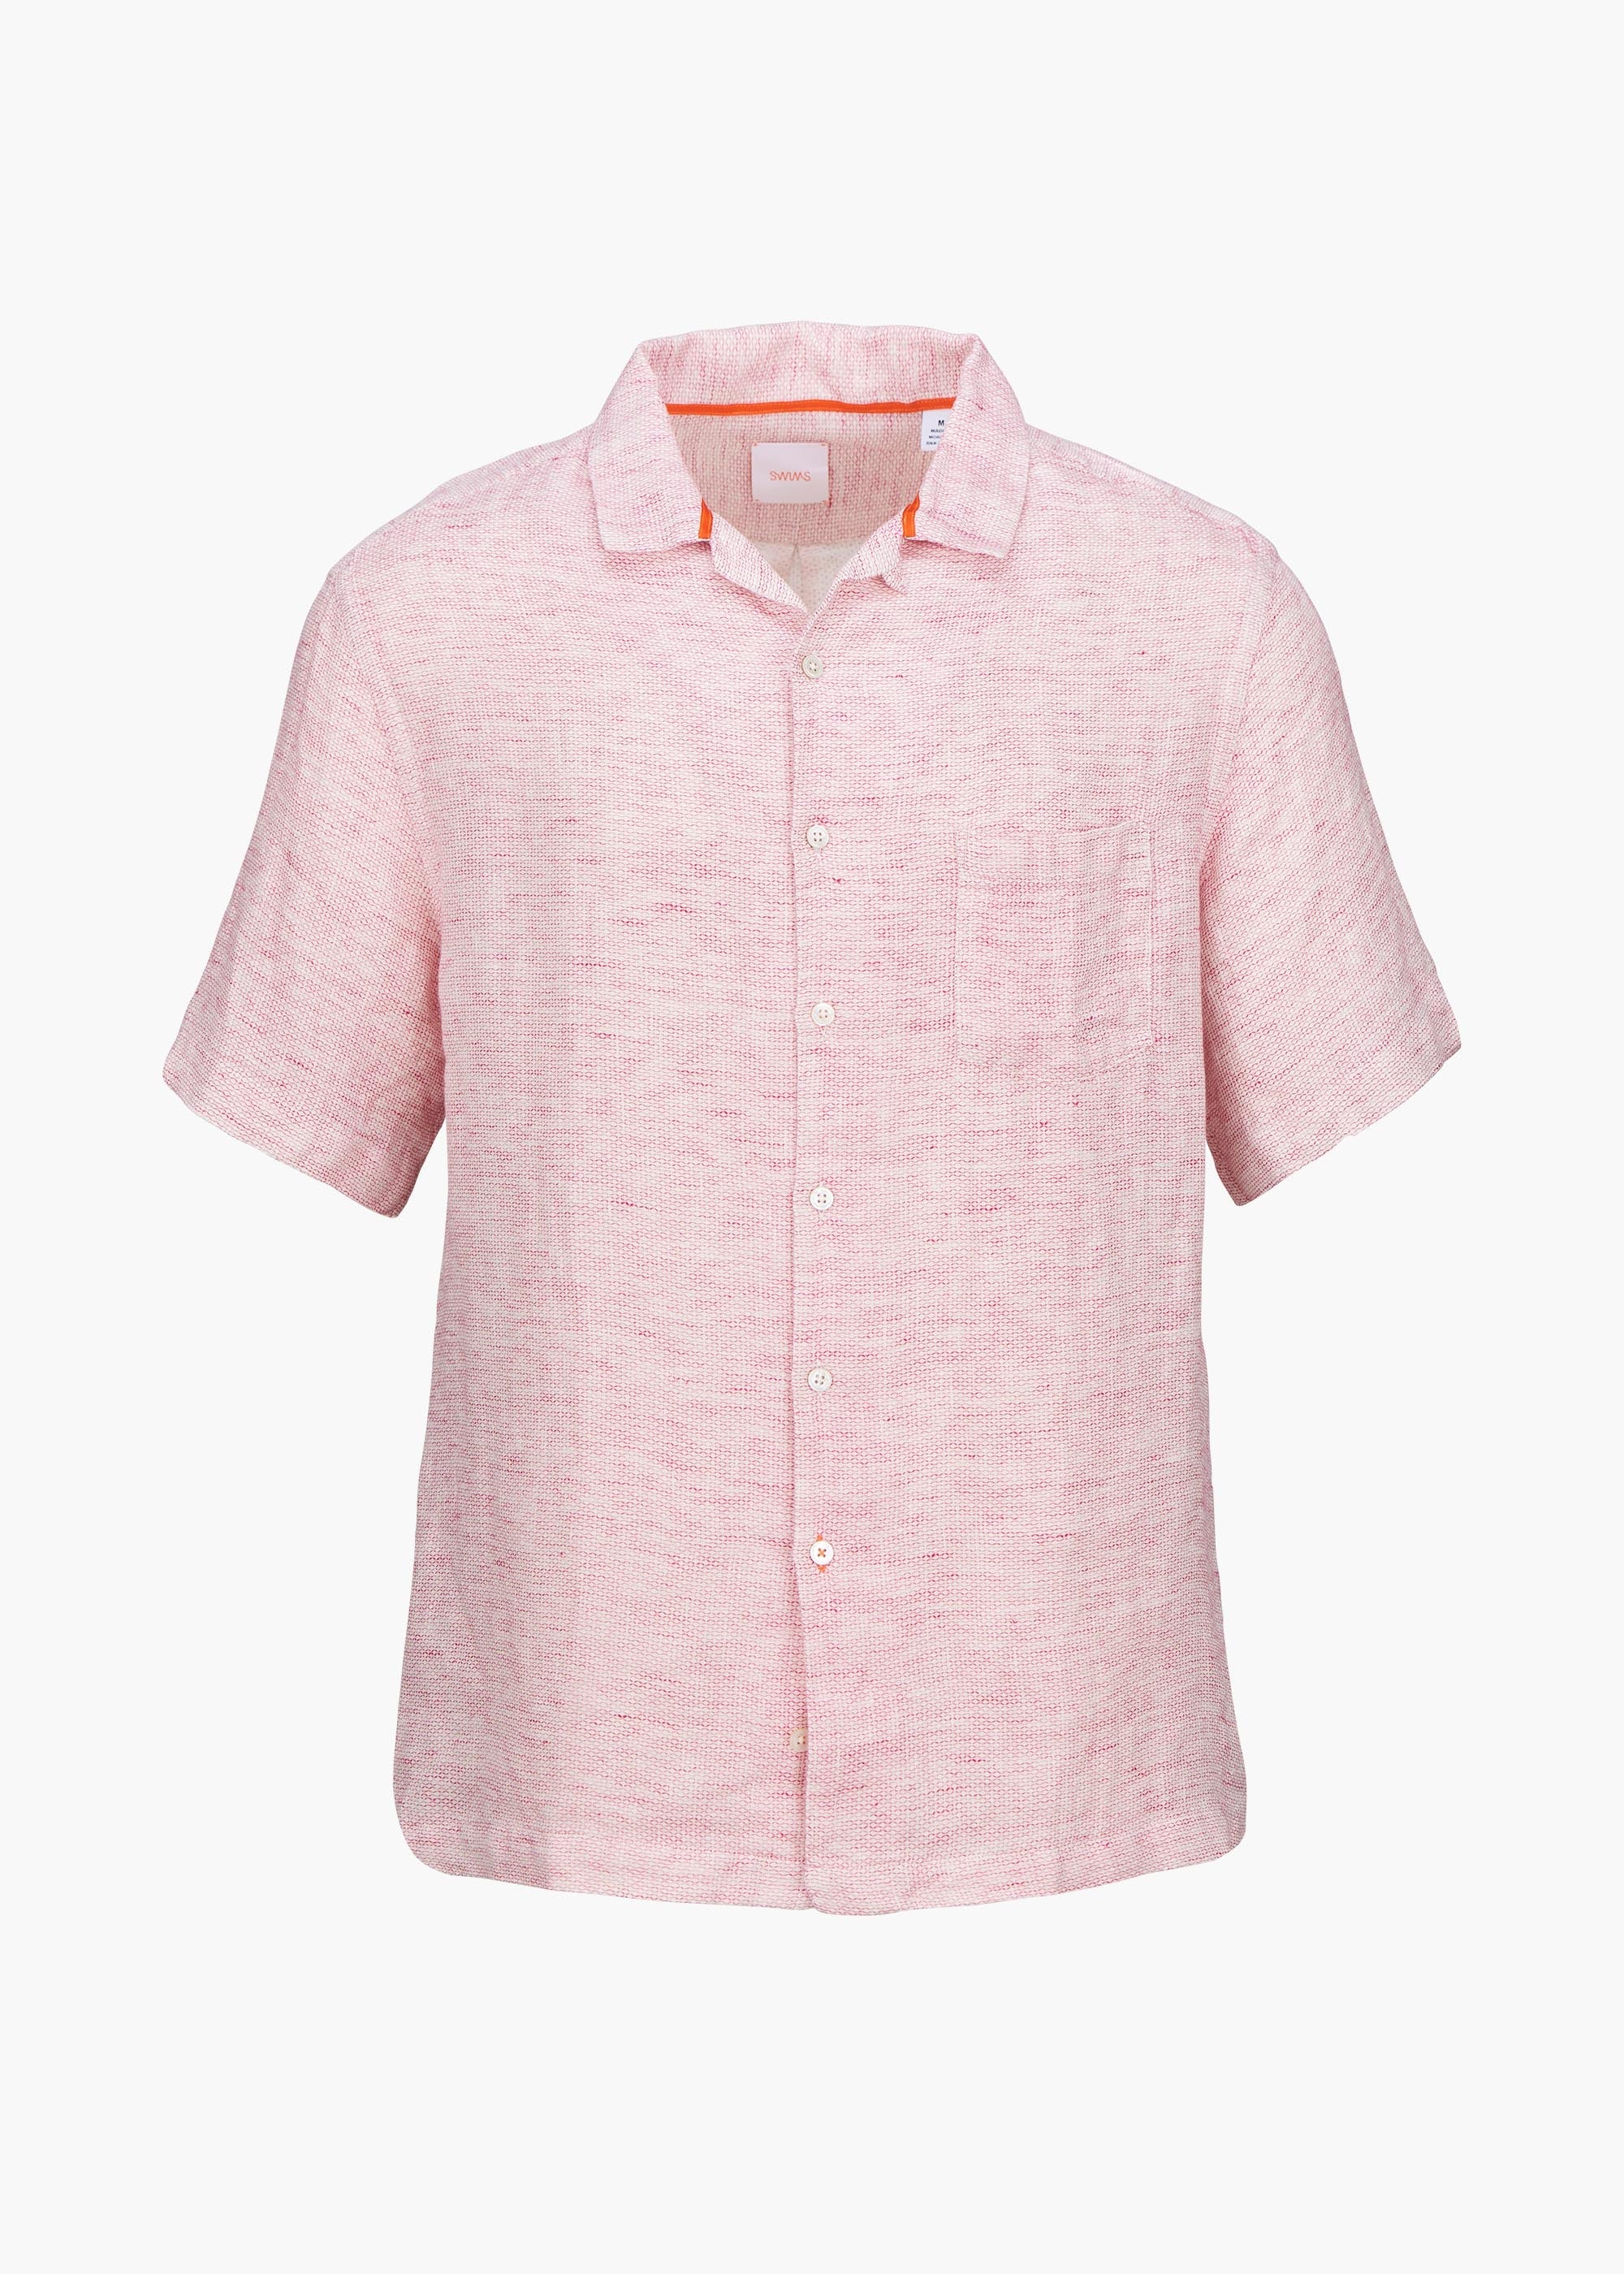 Capri Linen Shirt - background::white,variant::Berry Pink Linen